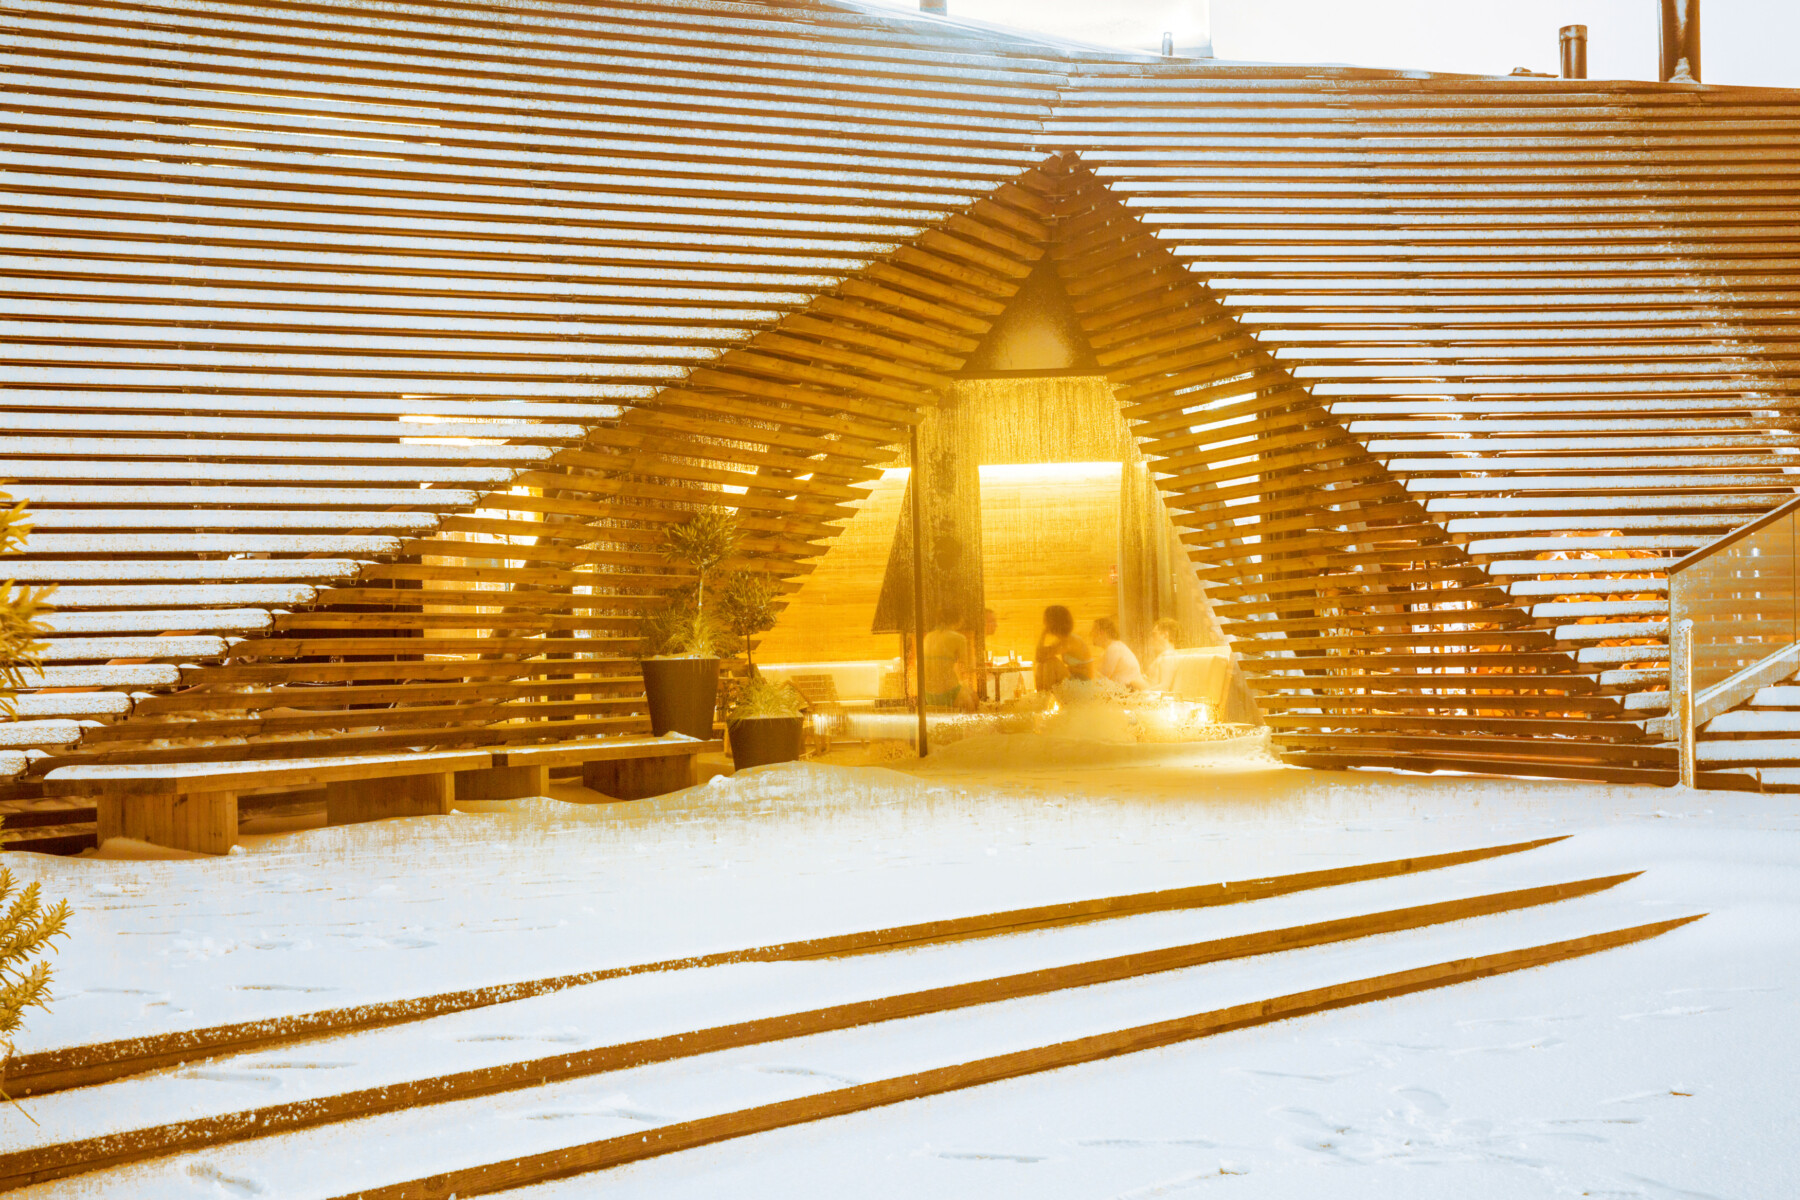 Um prédio de madeira com um arco triangular está nevado por fora e uma janela mostra pessoas sentadas em um ambiente aconchegante por dentro.